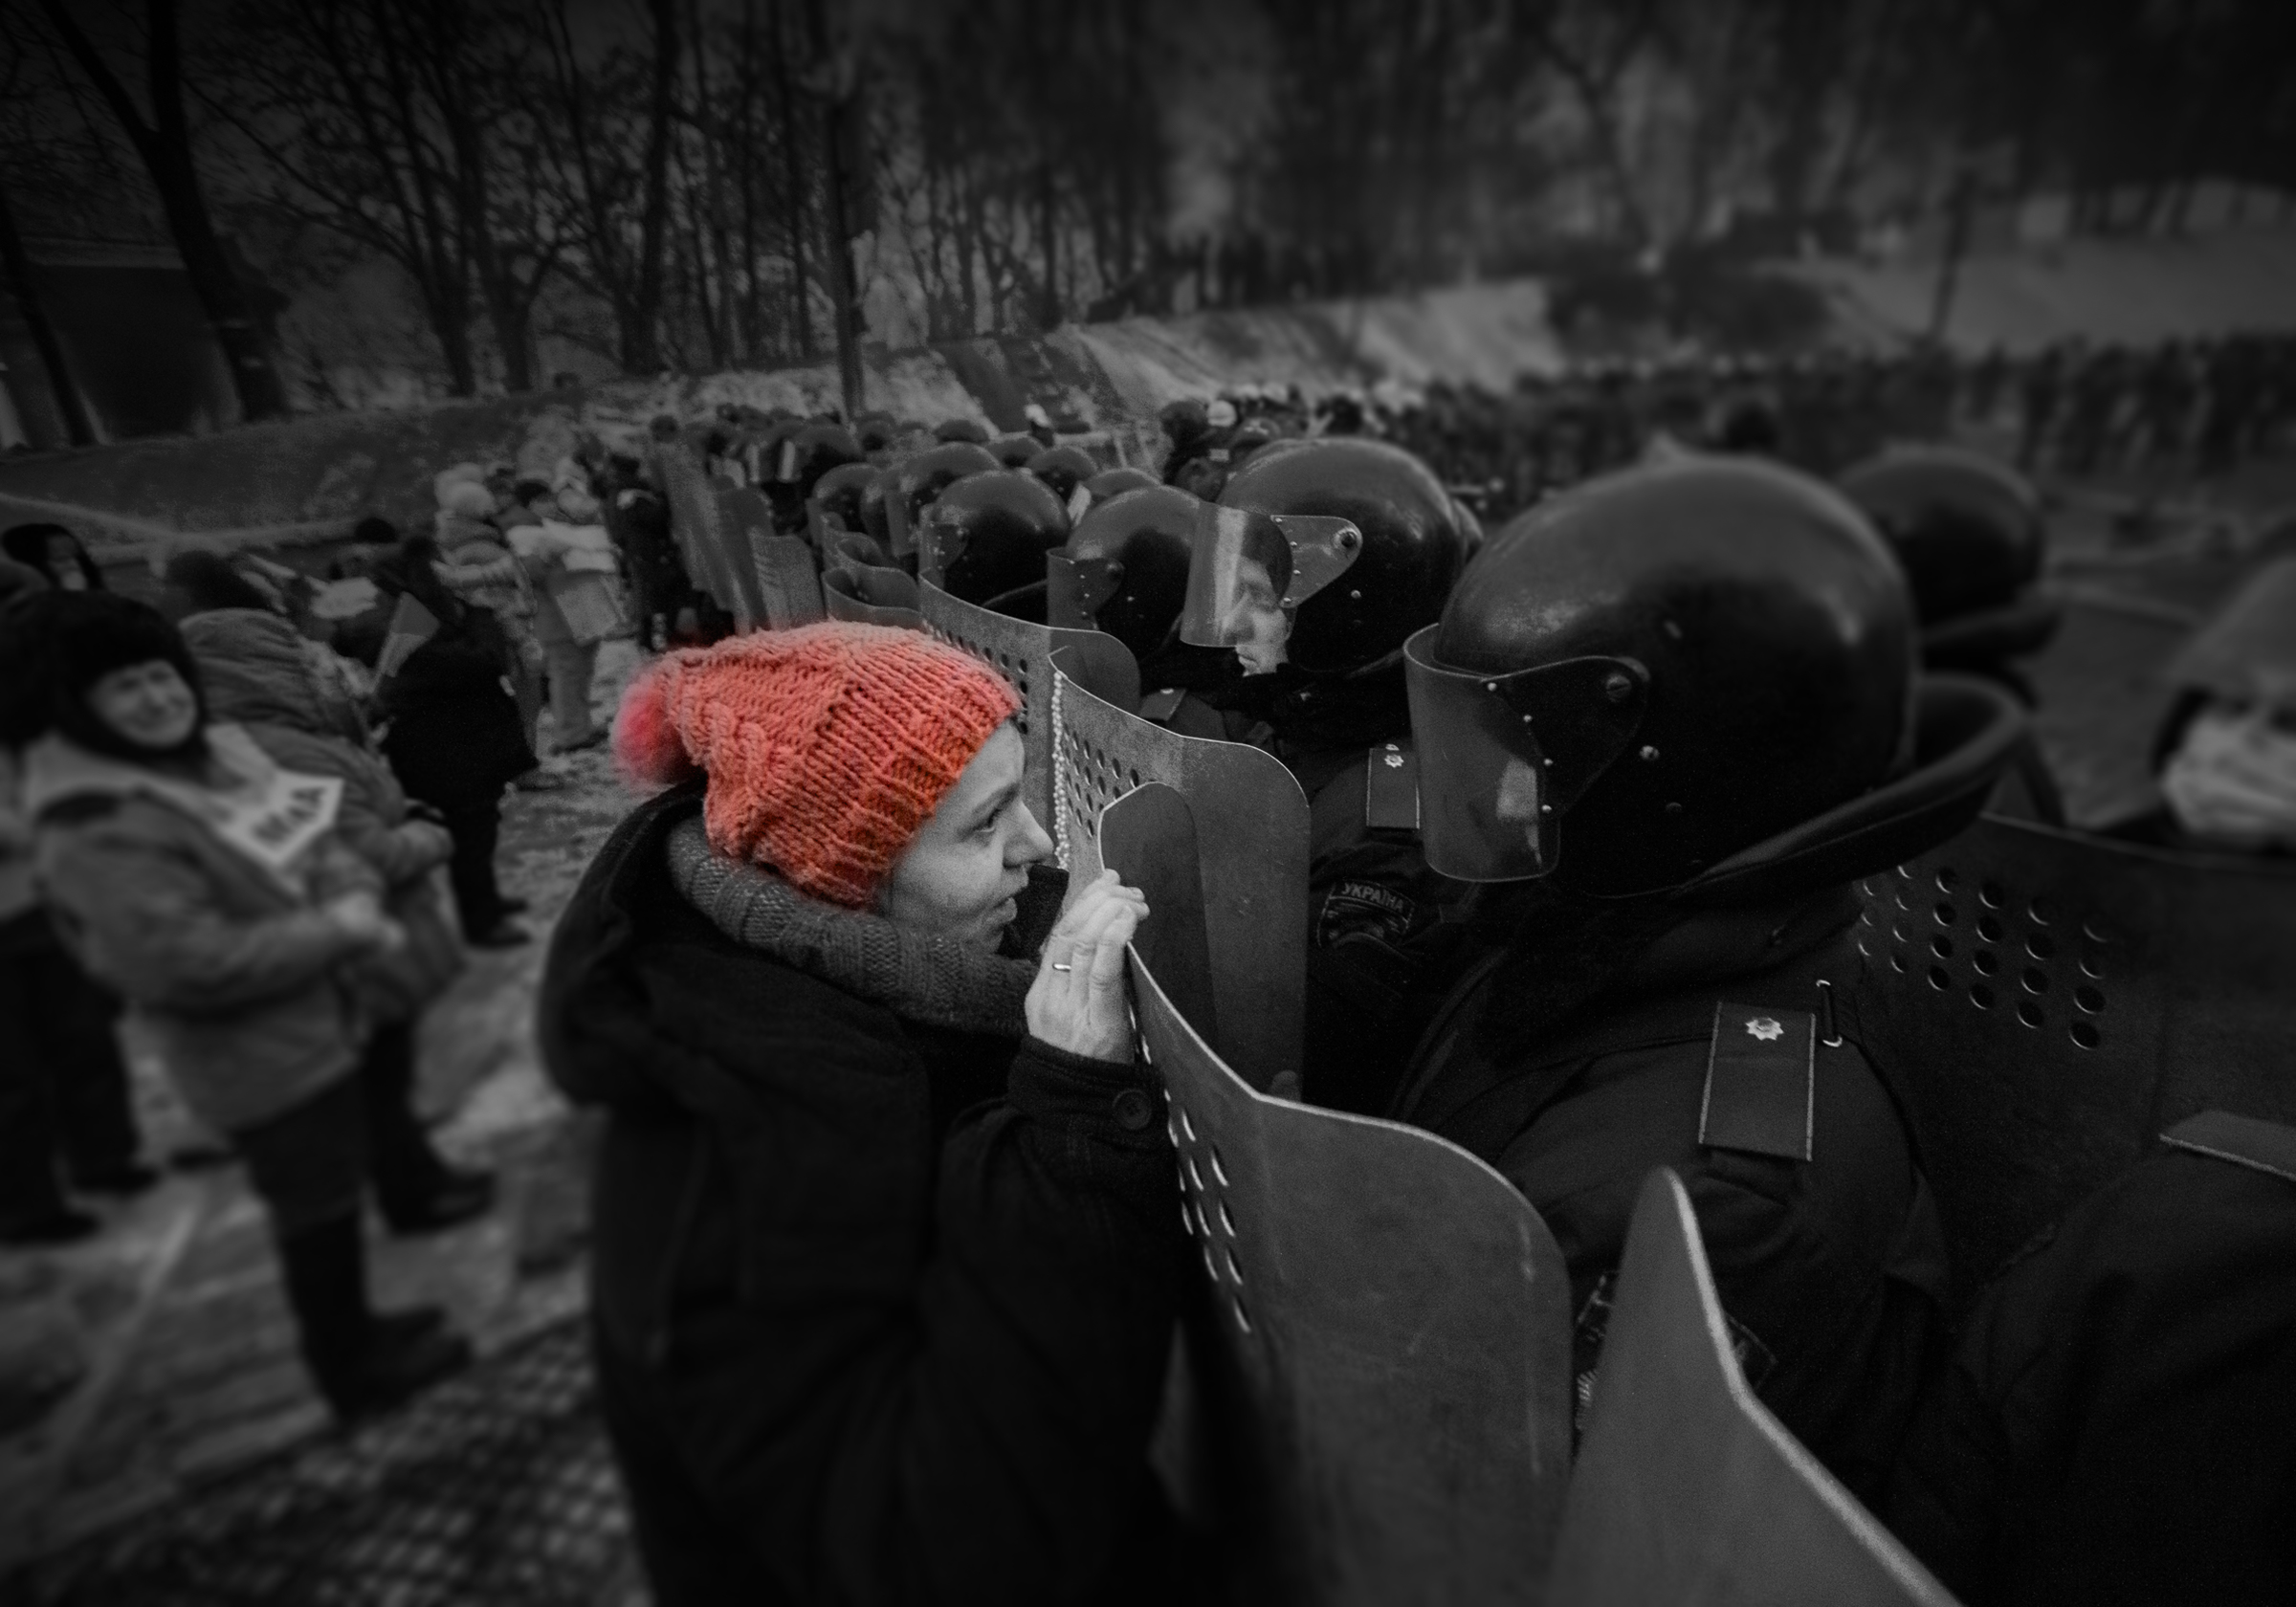 Protest in Ukraine